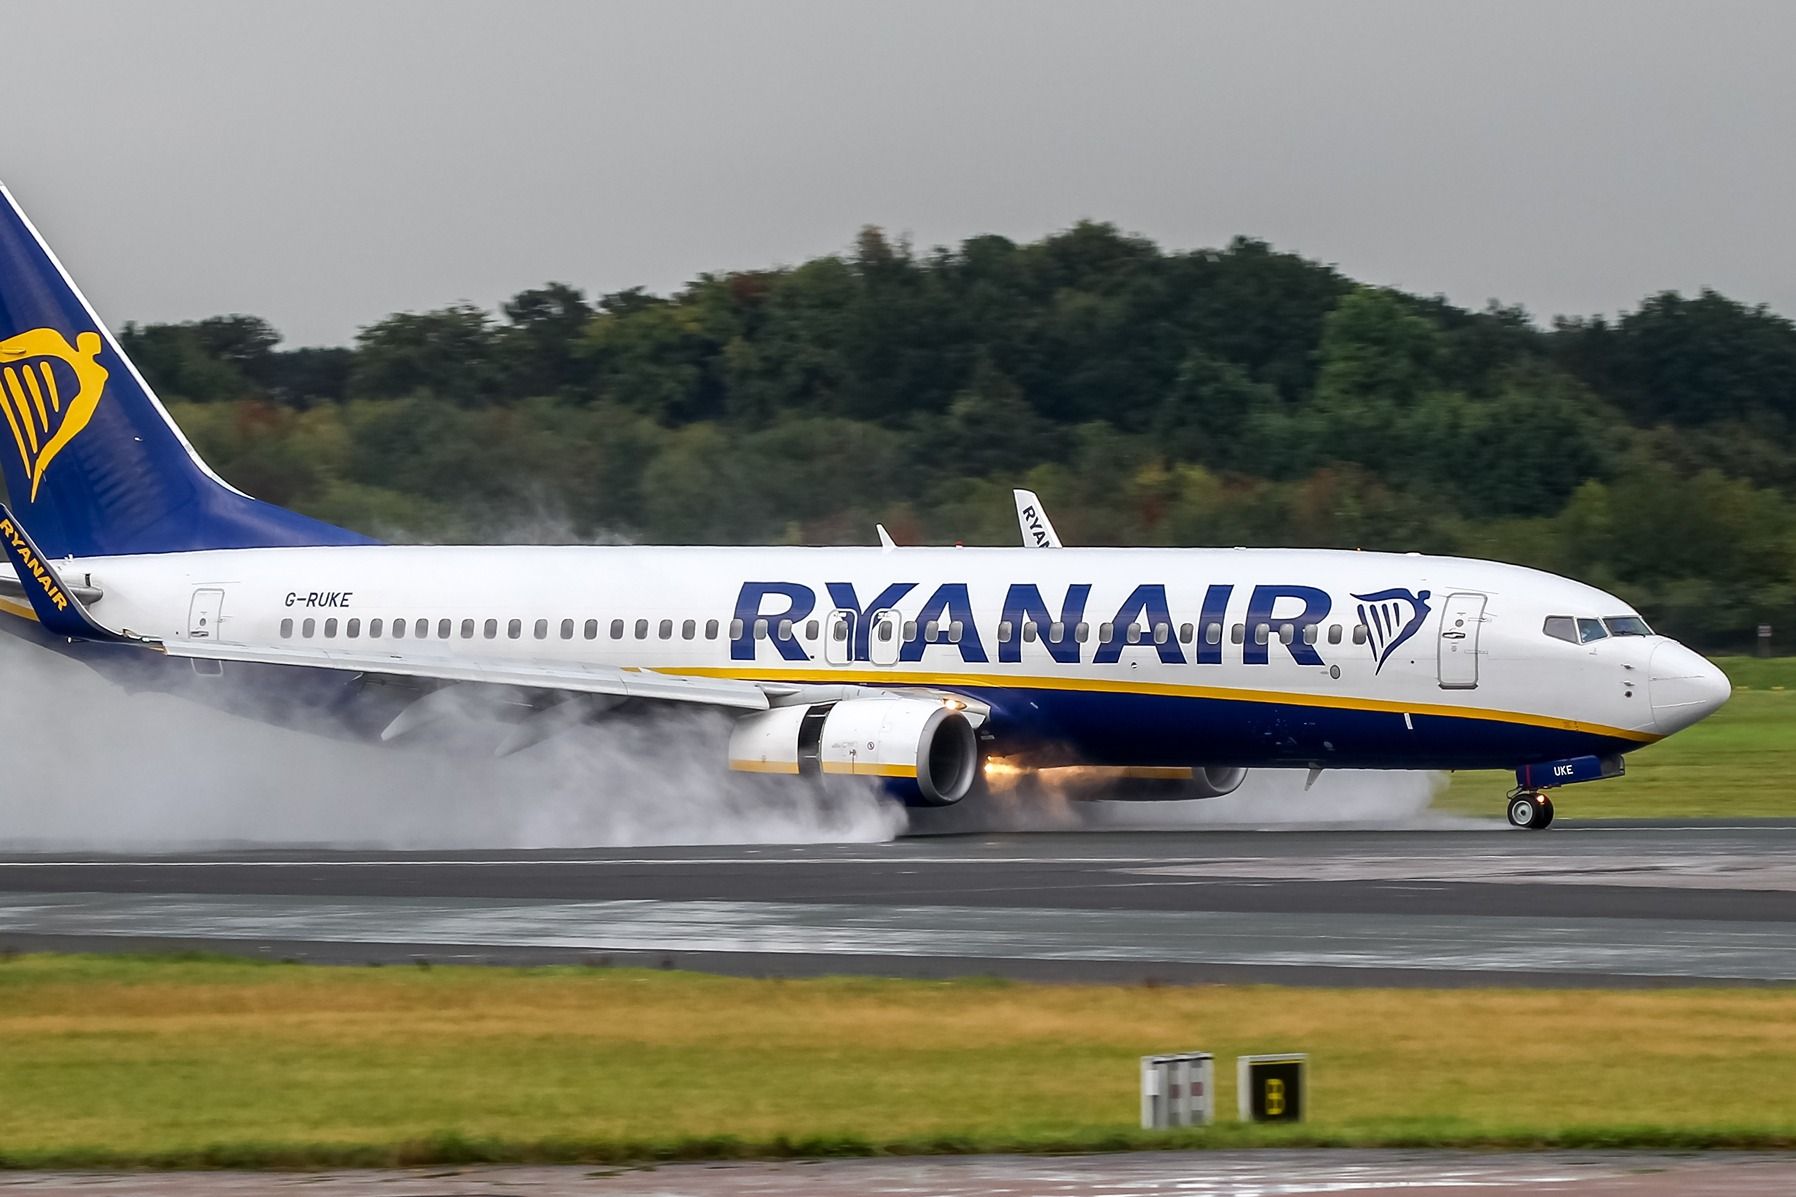 Ryanair Boeing 737-800 lands